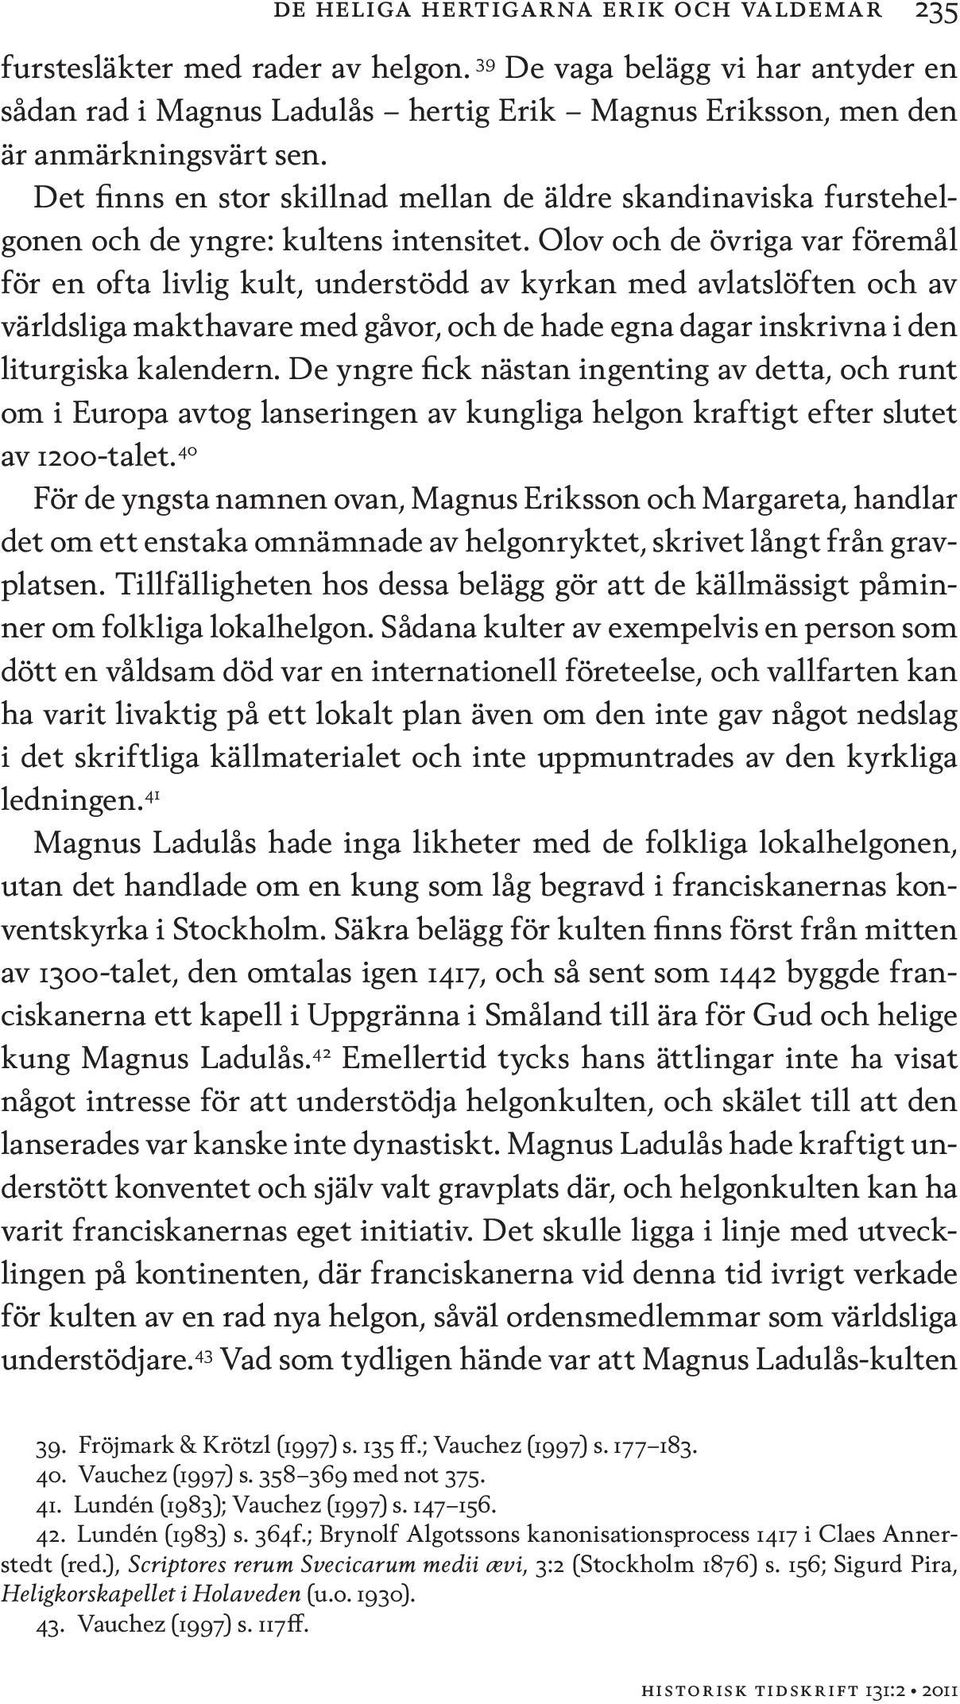 Det finns en stor skillnad mellan de äldre skandinaviska furstehelgonen och de yngre: kultens intensitet.